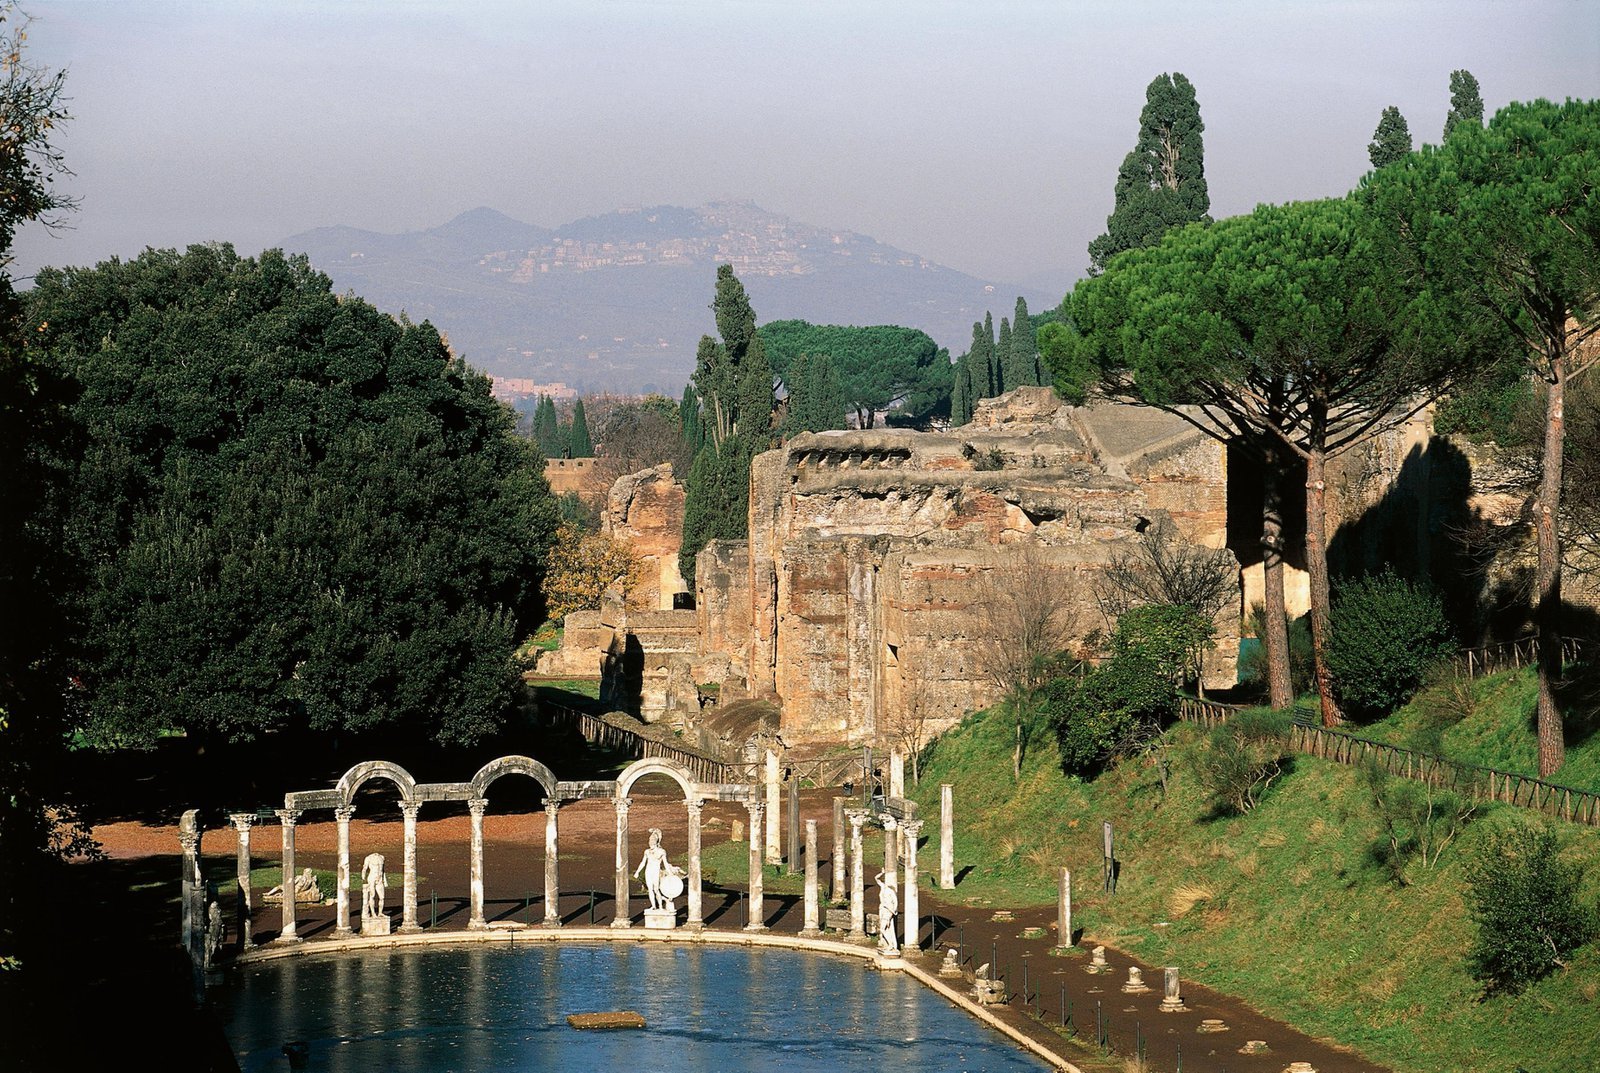 Hadrian’s Villa in Tivoli, Italy